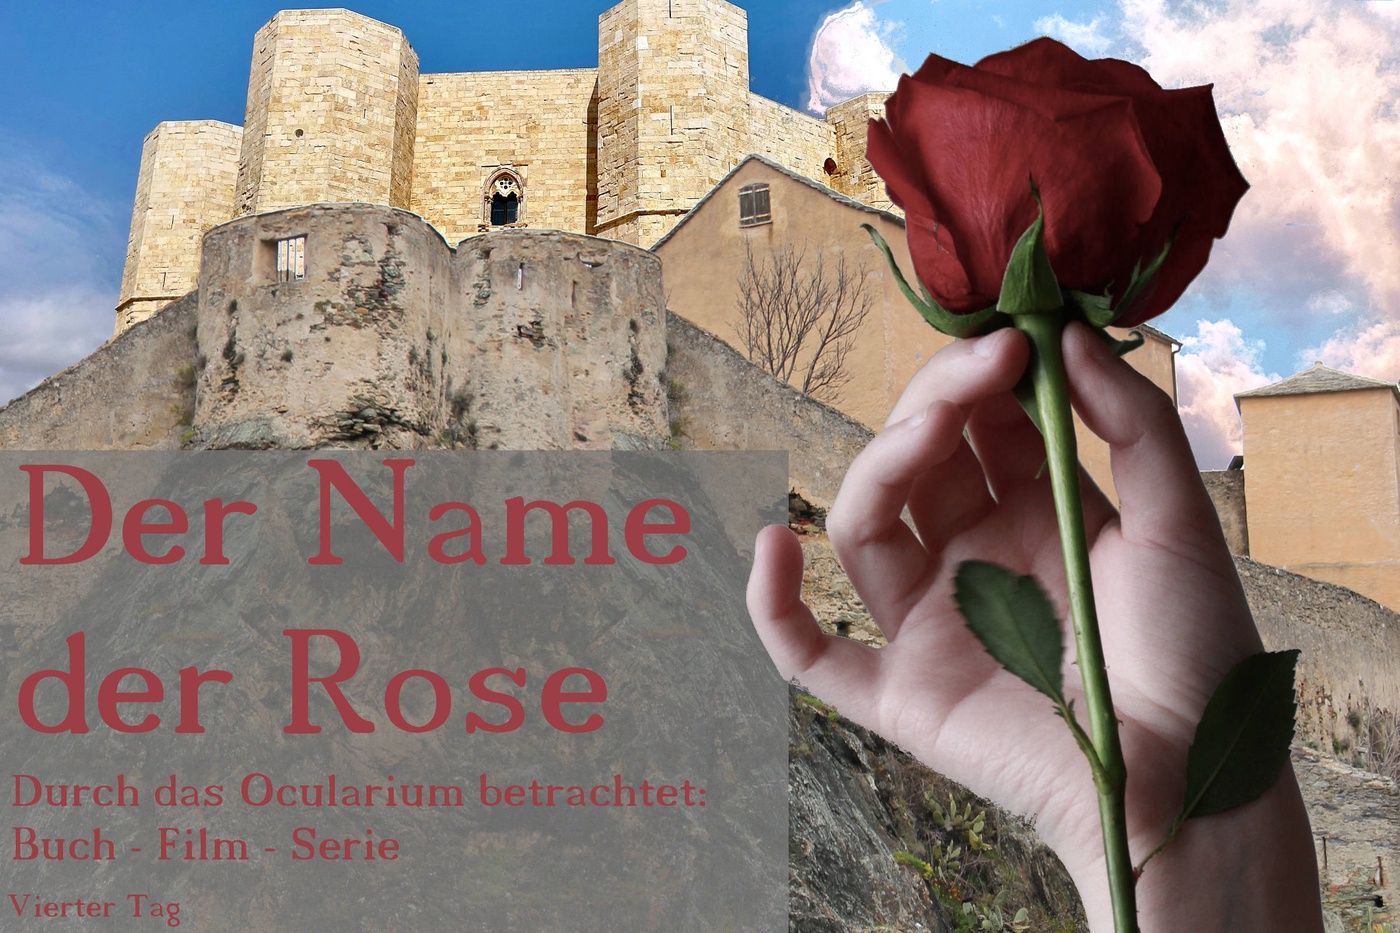 Der Name der Rose - Durch das Ocularium betrachtet: Buch - Film - Serie (6)